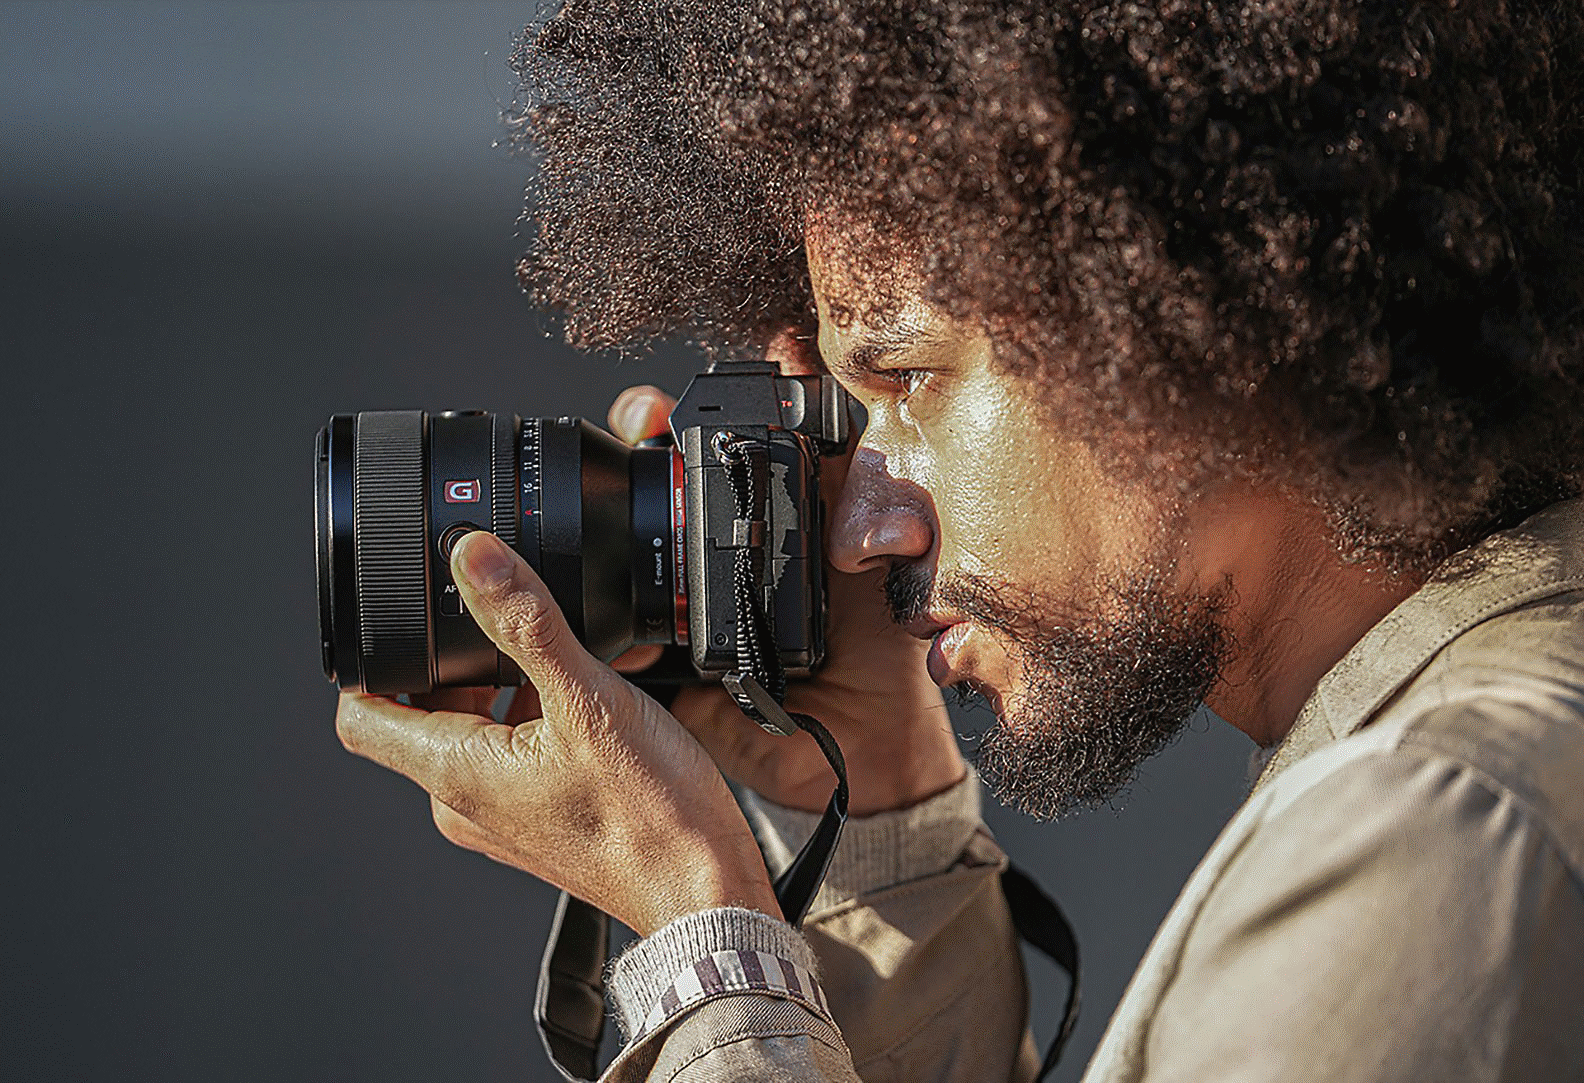 Obrázok osoby držiacej fotoaparát s pripevneným objektívom FE 50 mm F1,2 GM